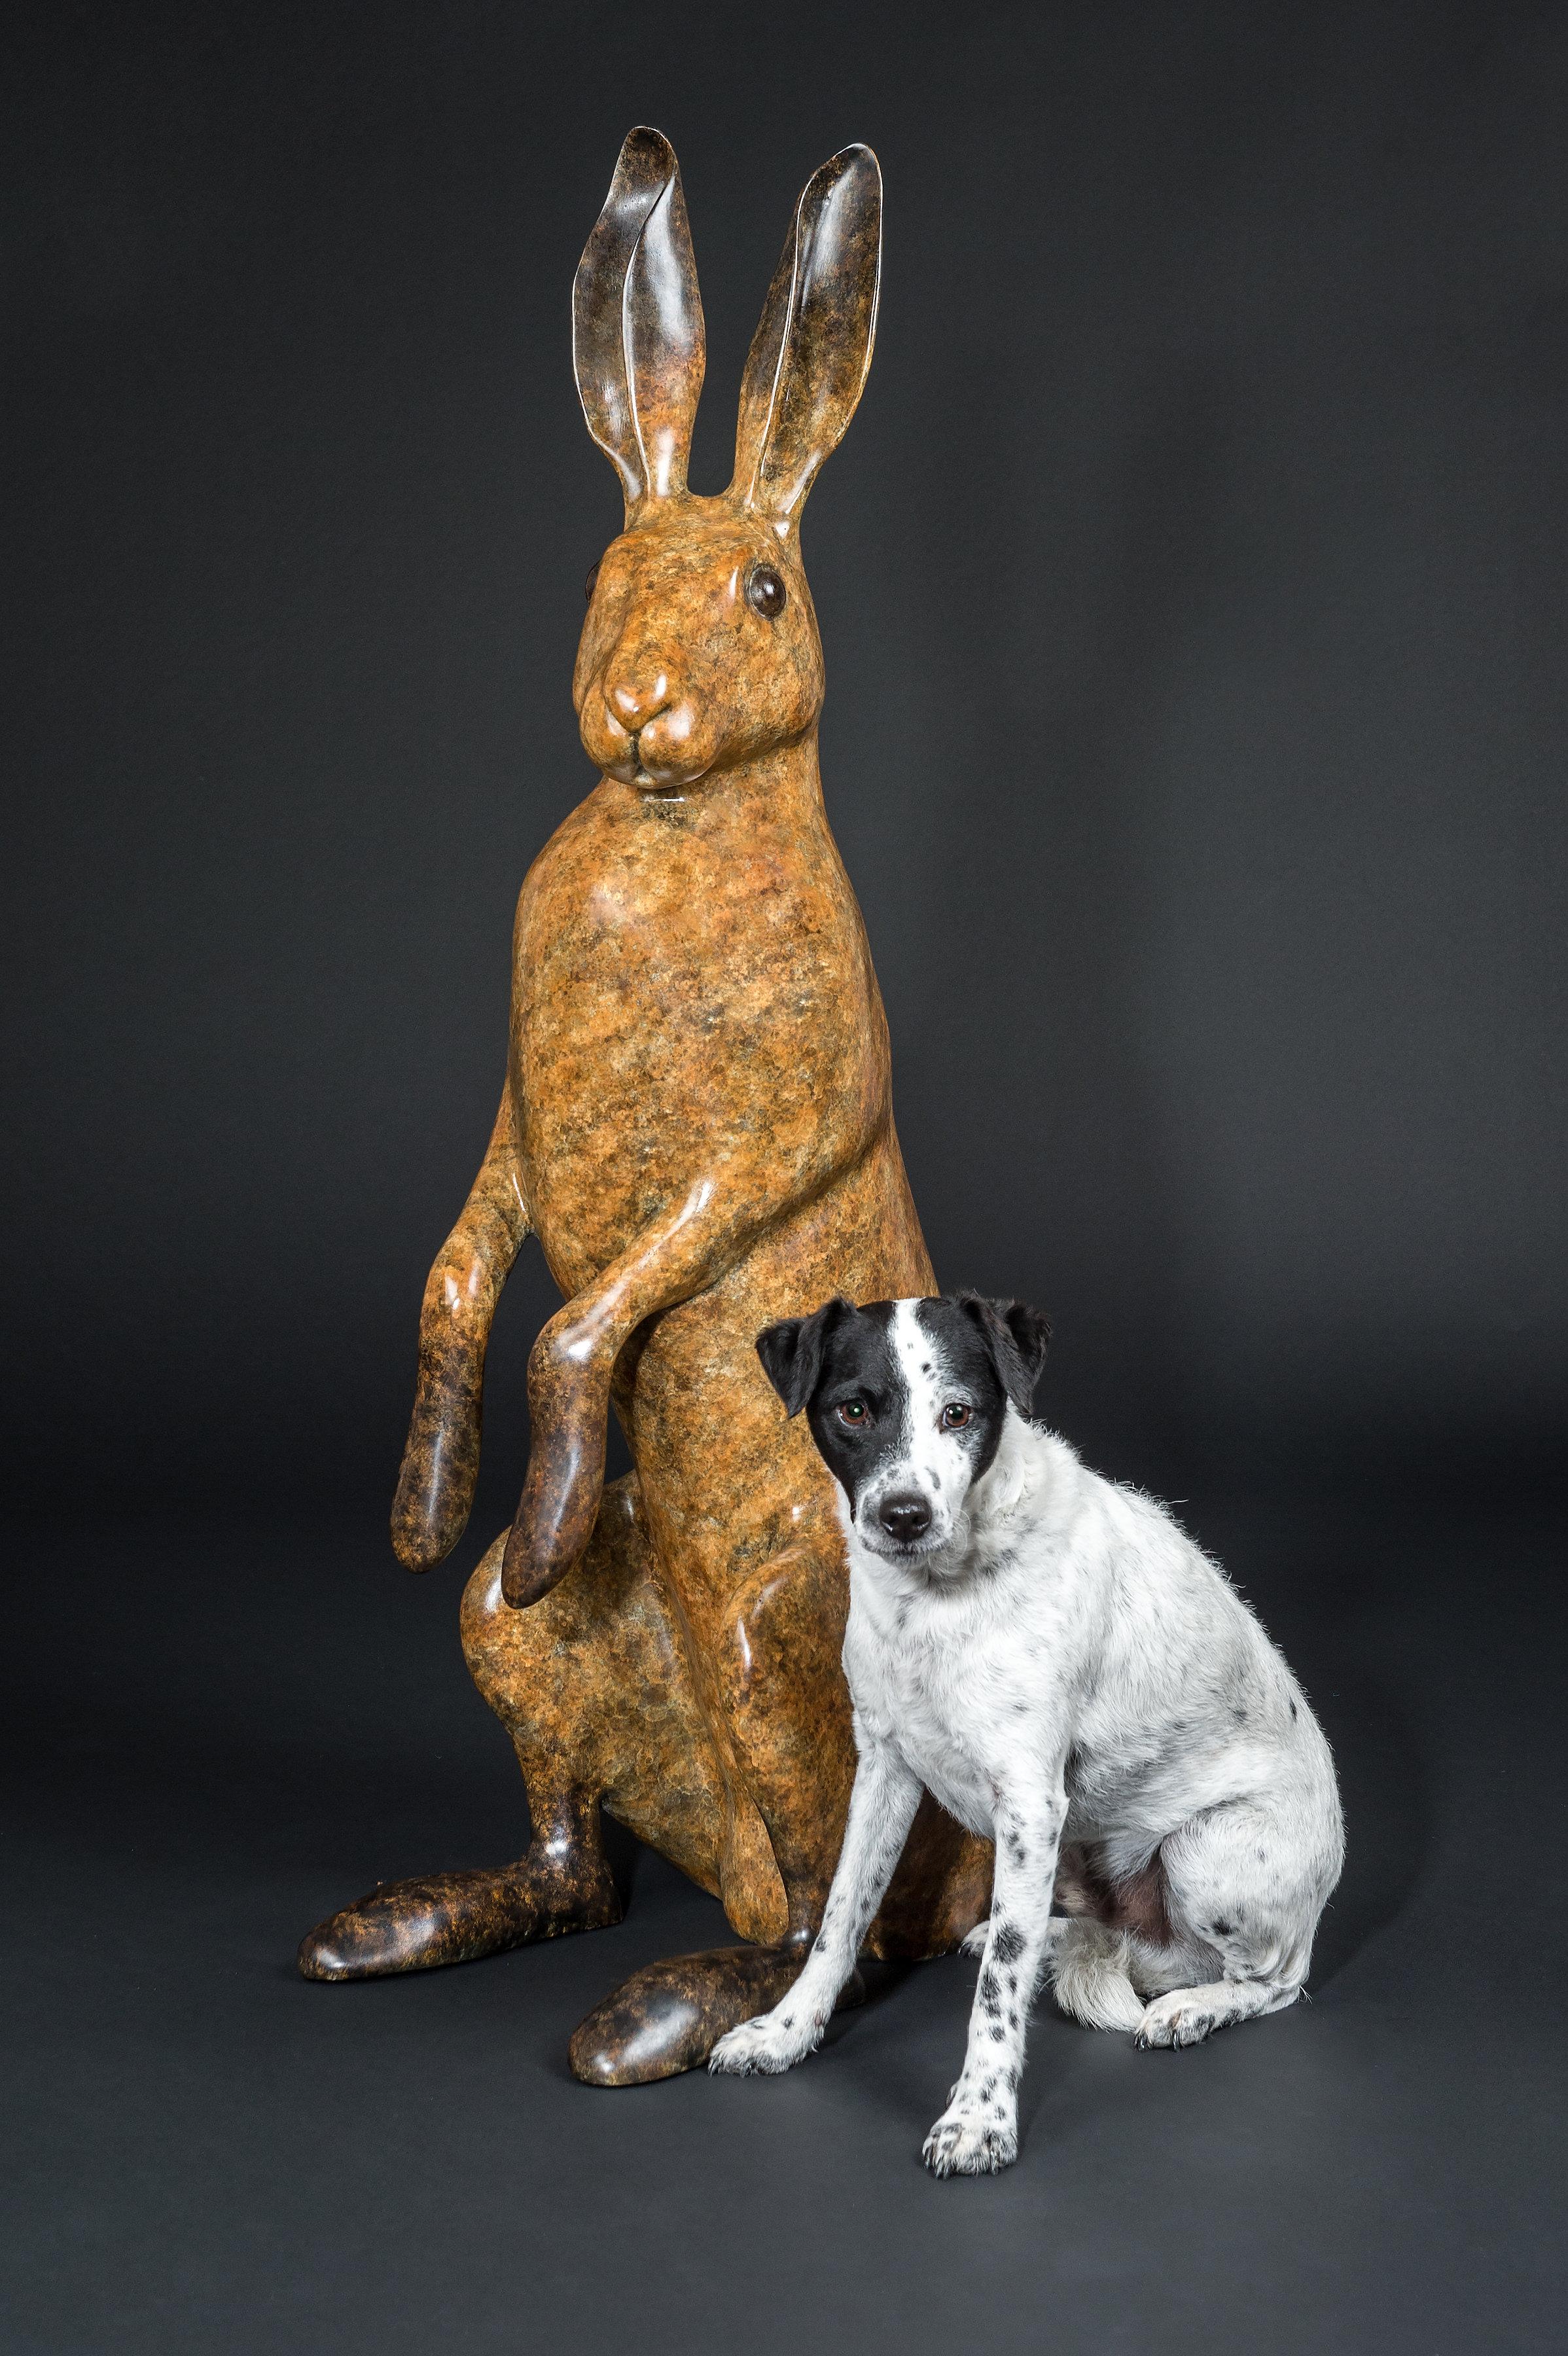 Grande sculpture de jardin contemporaine en bronze « Majestic Hare » d'un lapin/un harnais - Contemporain Sculpture par Richard Smith b.1955